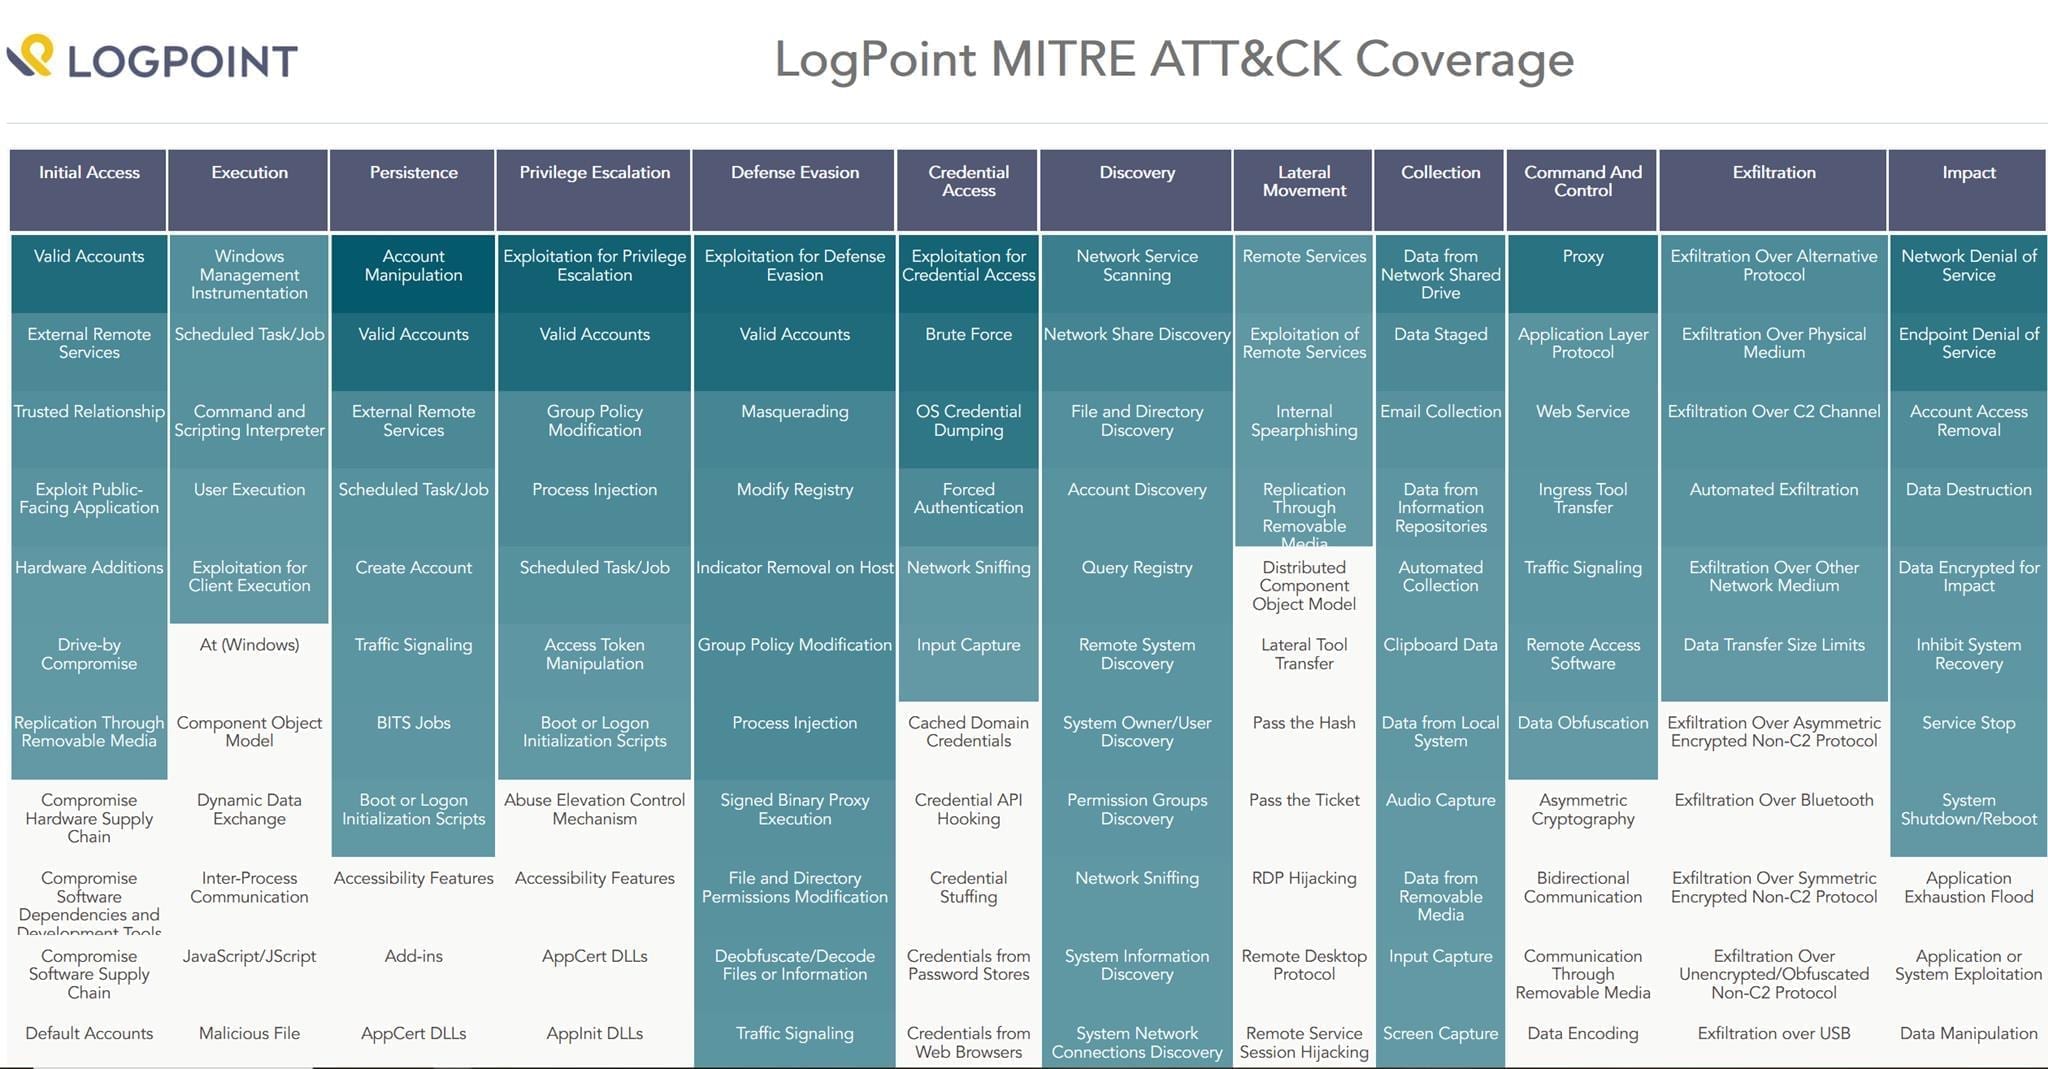 MITRE ATT&CK coverage in LogPoint SIEM